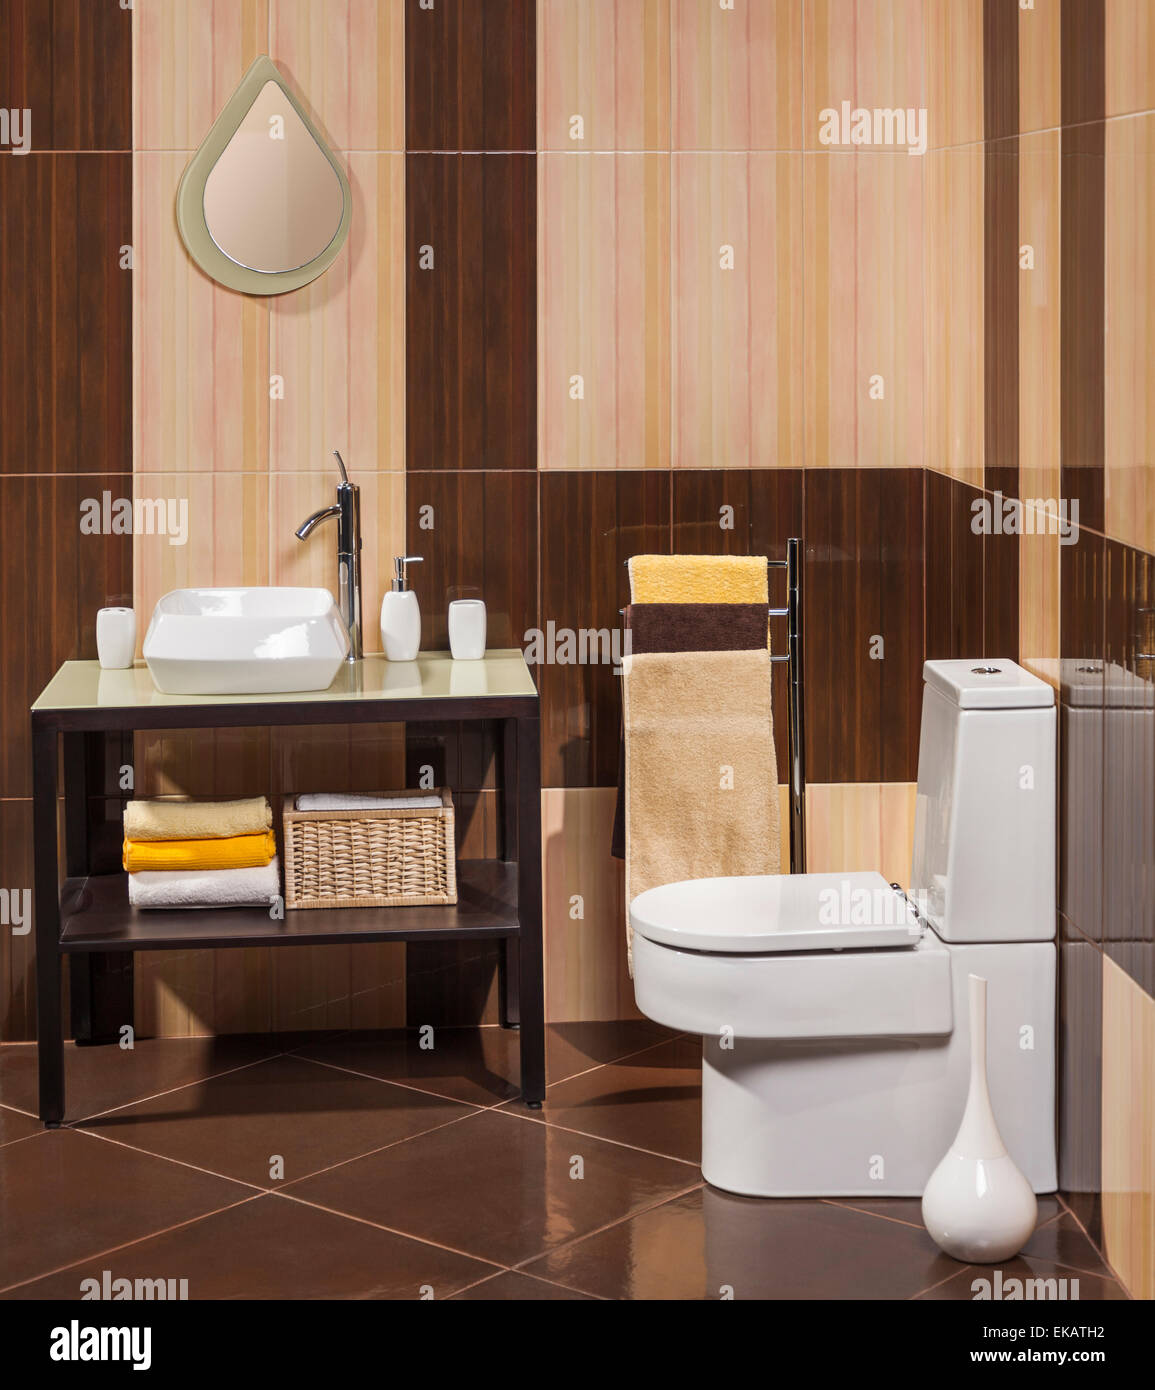 Détail d'une salle de bains moderne avec lavabo, toilettes et sèche-serviettes Banque D'Images